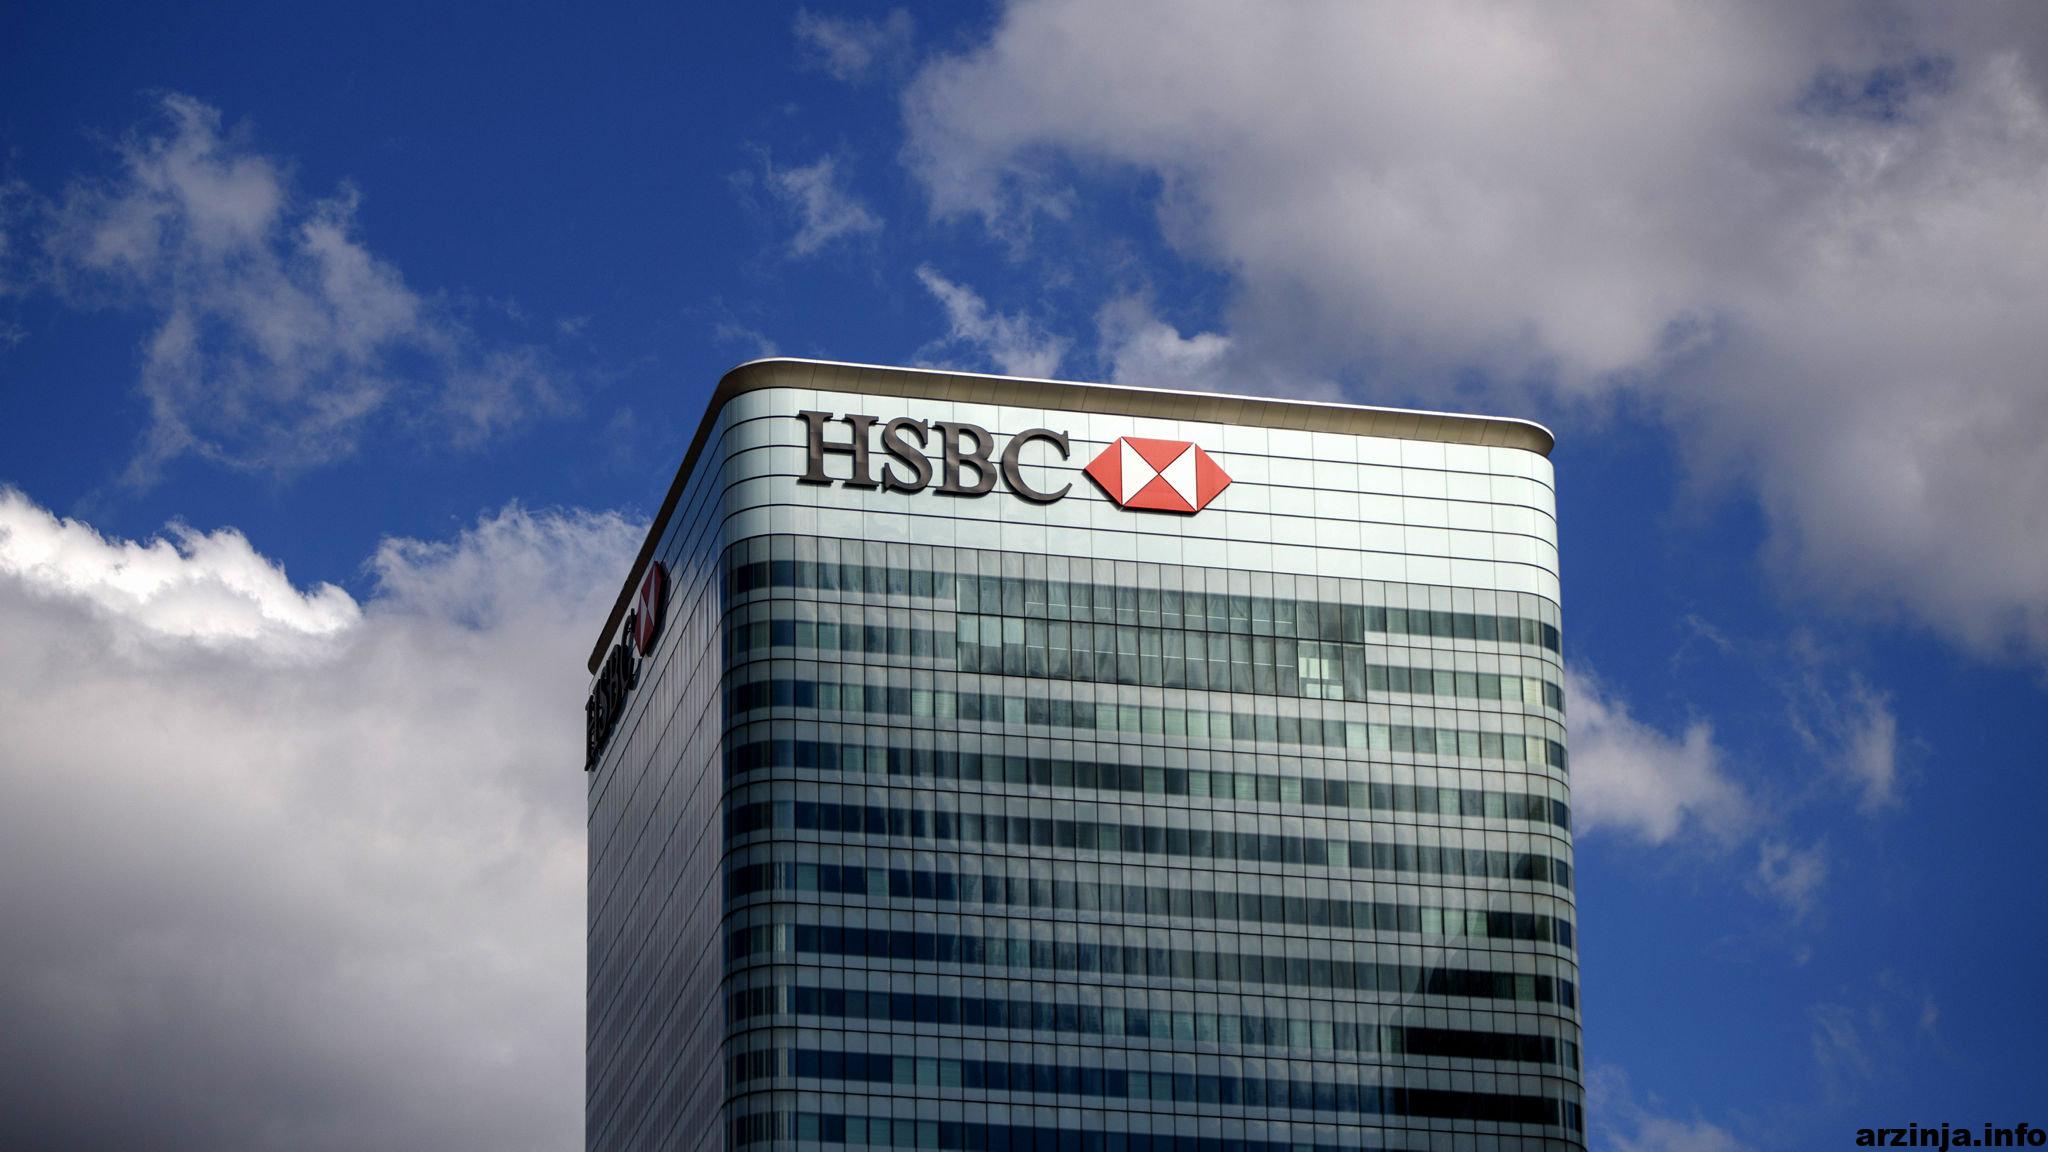 بانک سرمایه گذاری HSBC سهام شرکت میکرو استراتژی را در لیست سیاه خود قرار داد